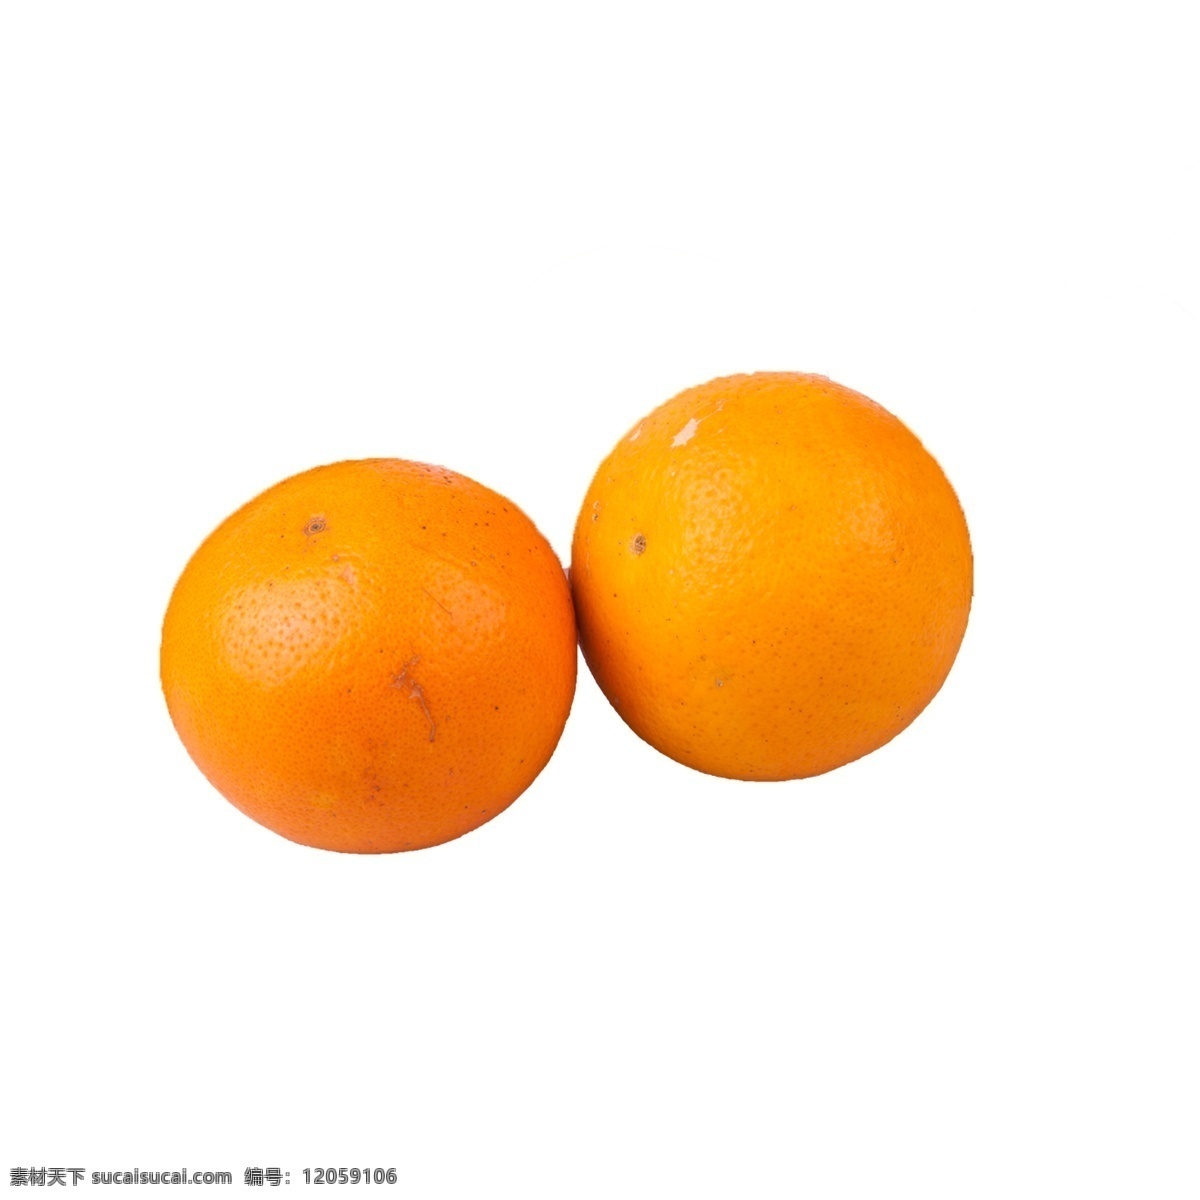 两个 橙子 免 抠 两个橙子 水果 好吃的橙子 两个橙子免抠 新鲜的橙子 有营养的橙子 甜橙